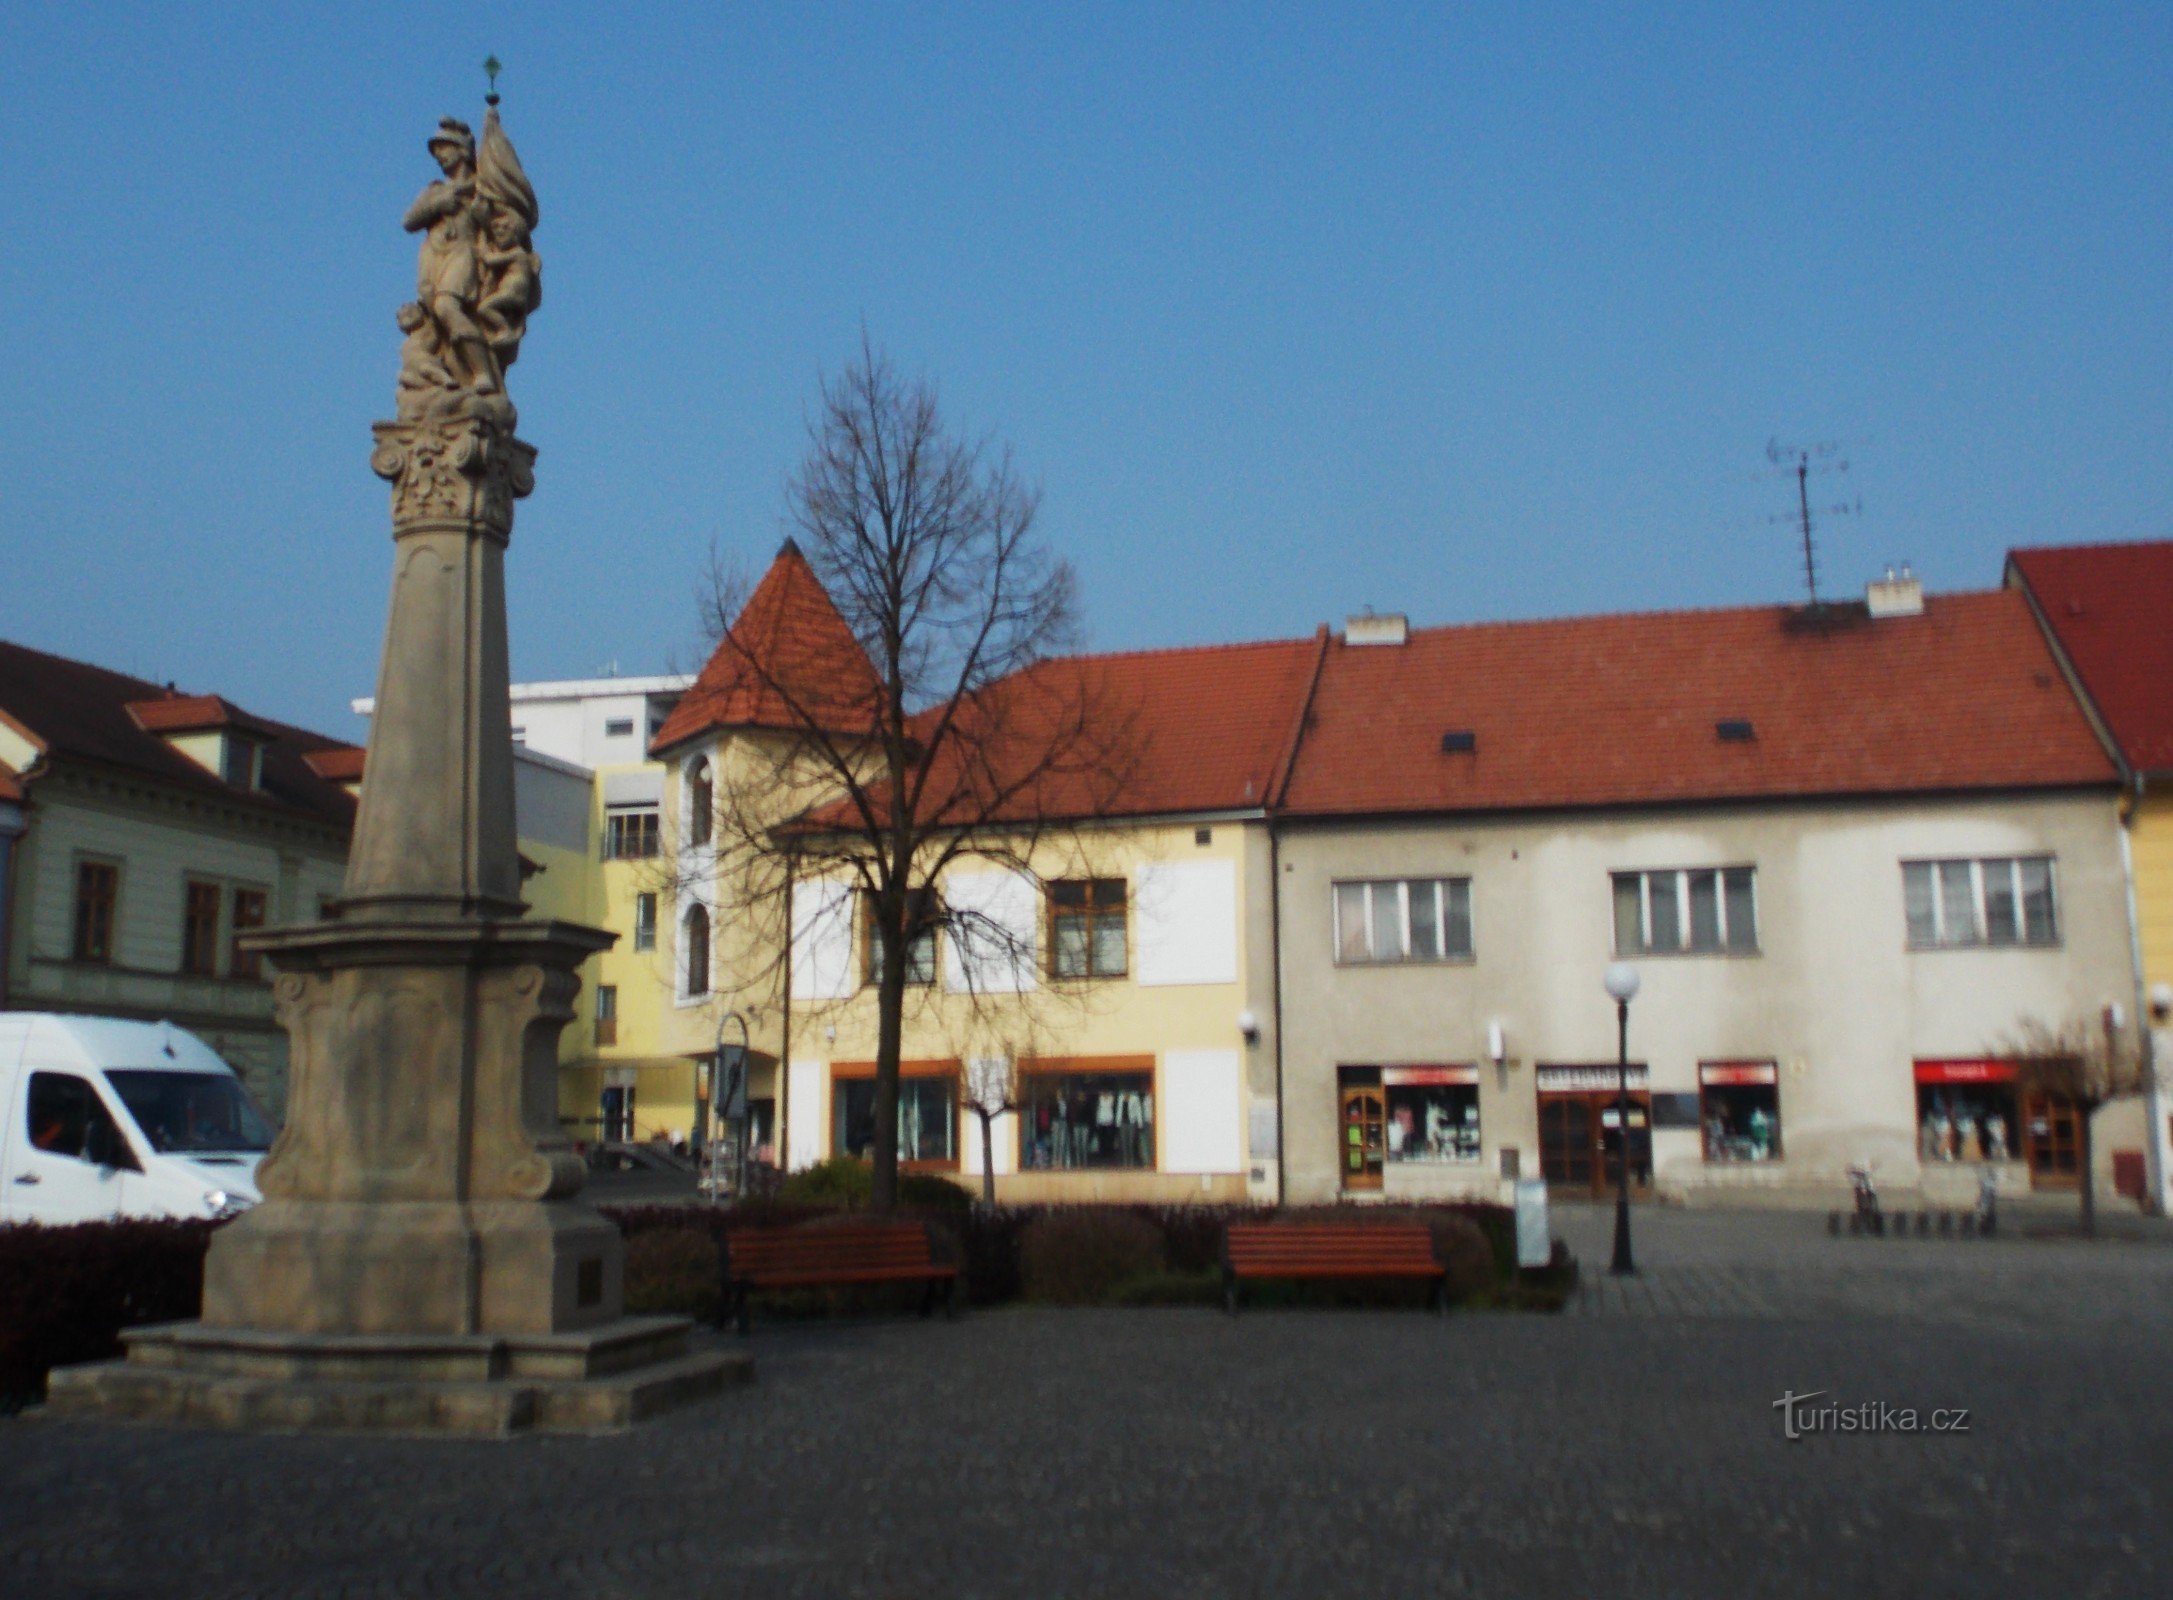 Mariański náměstí